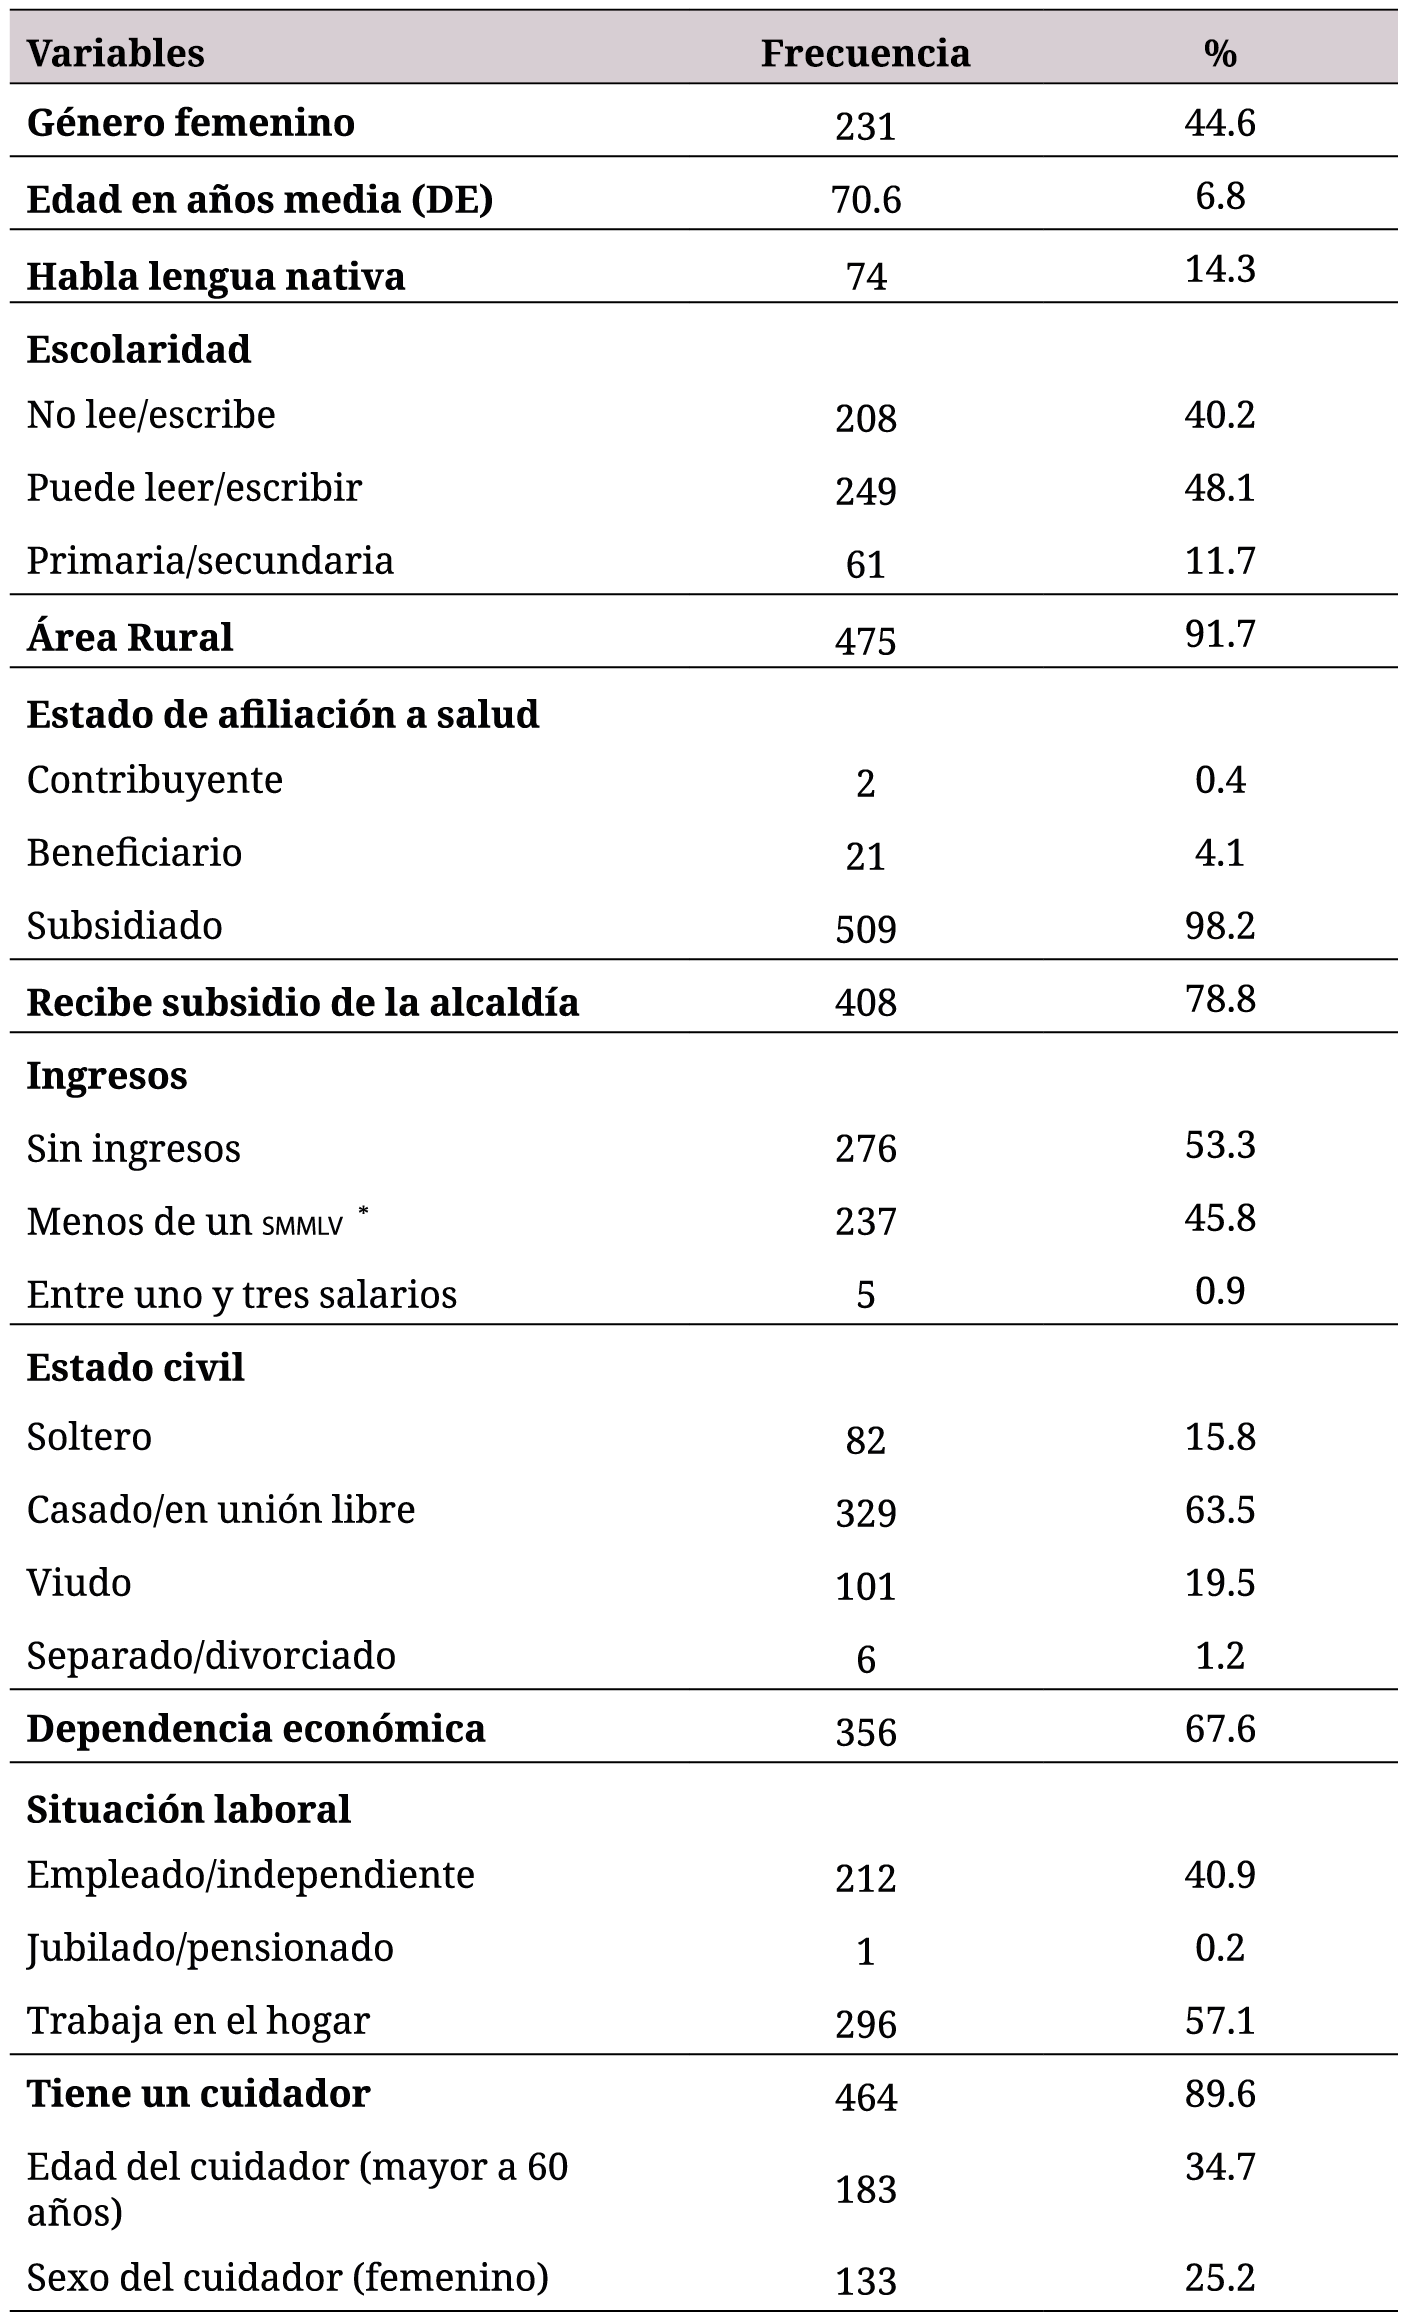 Características sociodemográficas de quinientos dieciocho adultos mayores indígenas del departamento de Nariño, exprovincia de Obando
3

